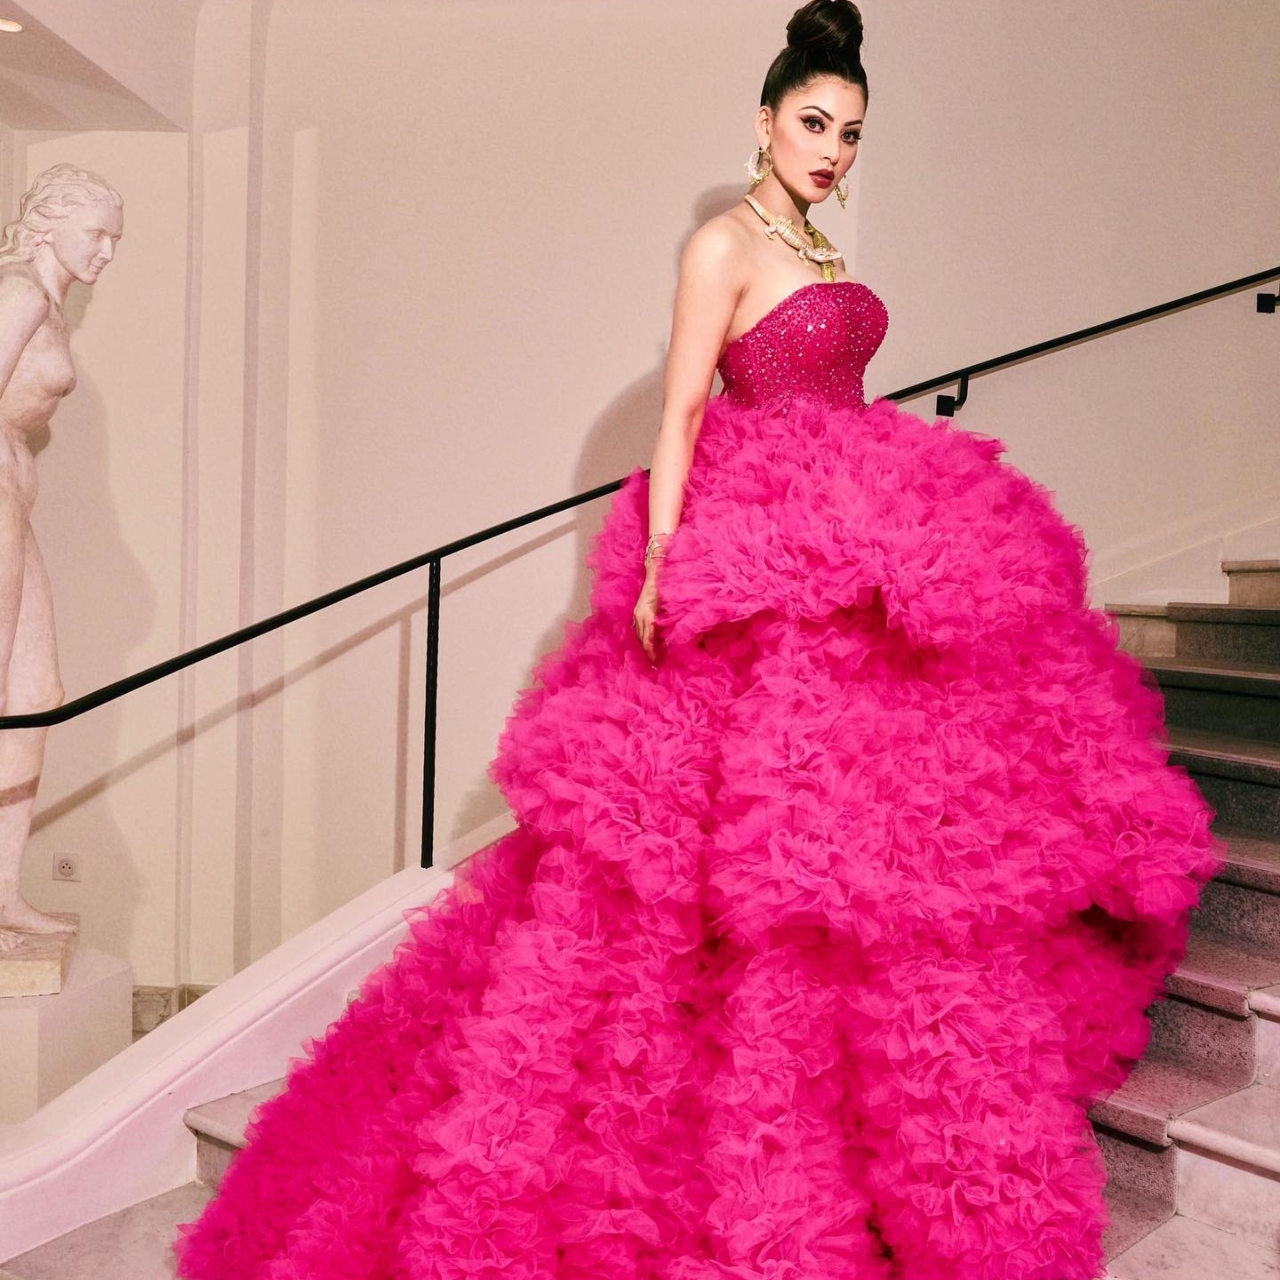 Cannes 2023: उर्वशी रौलेता ने उड़ाए होश, पिंक गाउन और मगरमच्छ वाला नेकपीस पहनकर रेड कार्पेट पर उतरीं | Urvashi Rautela Cannes Film Festival 2023 Look In Pink Frill Gown With Crocodile